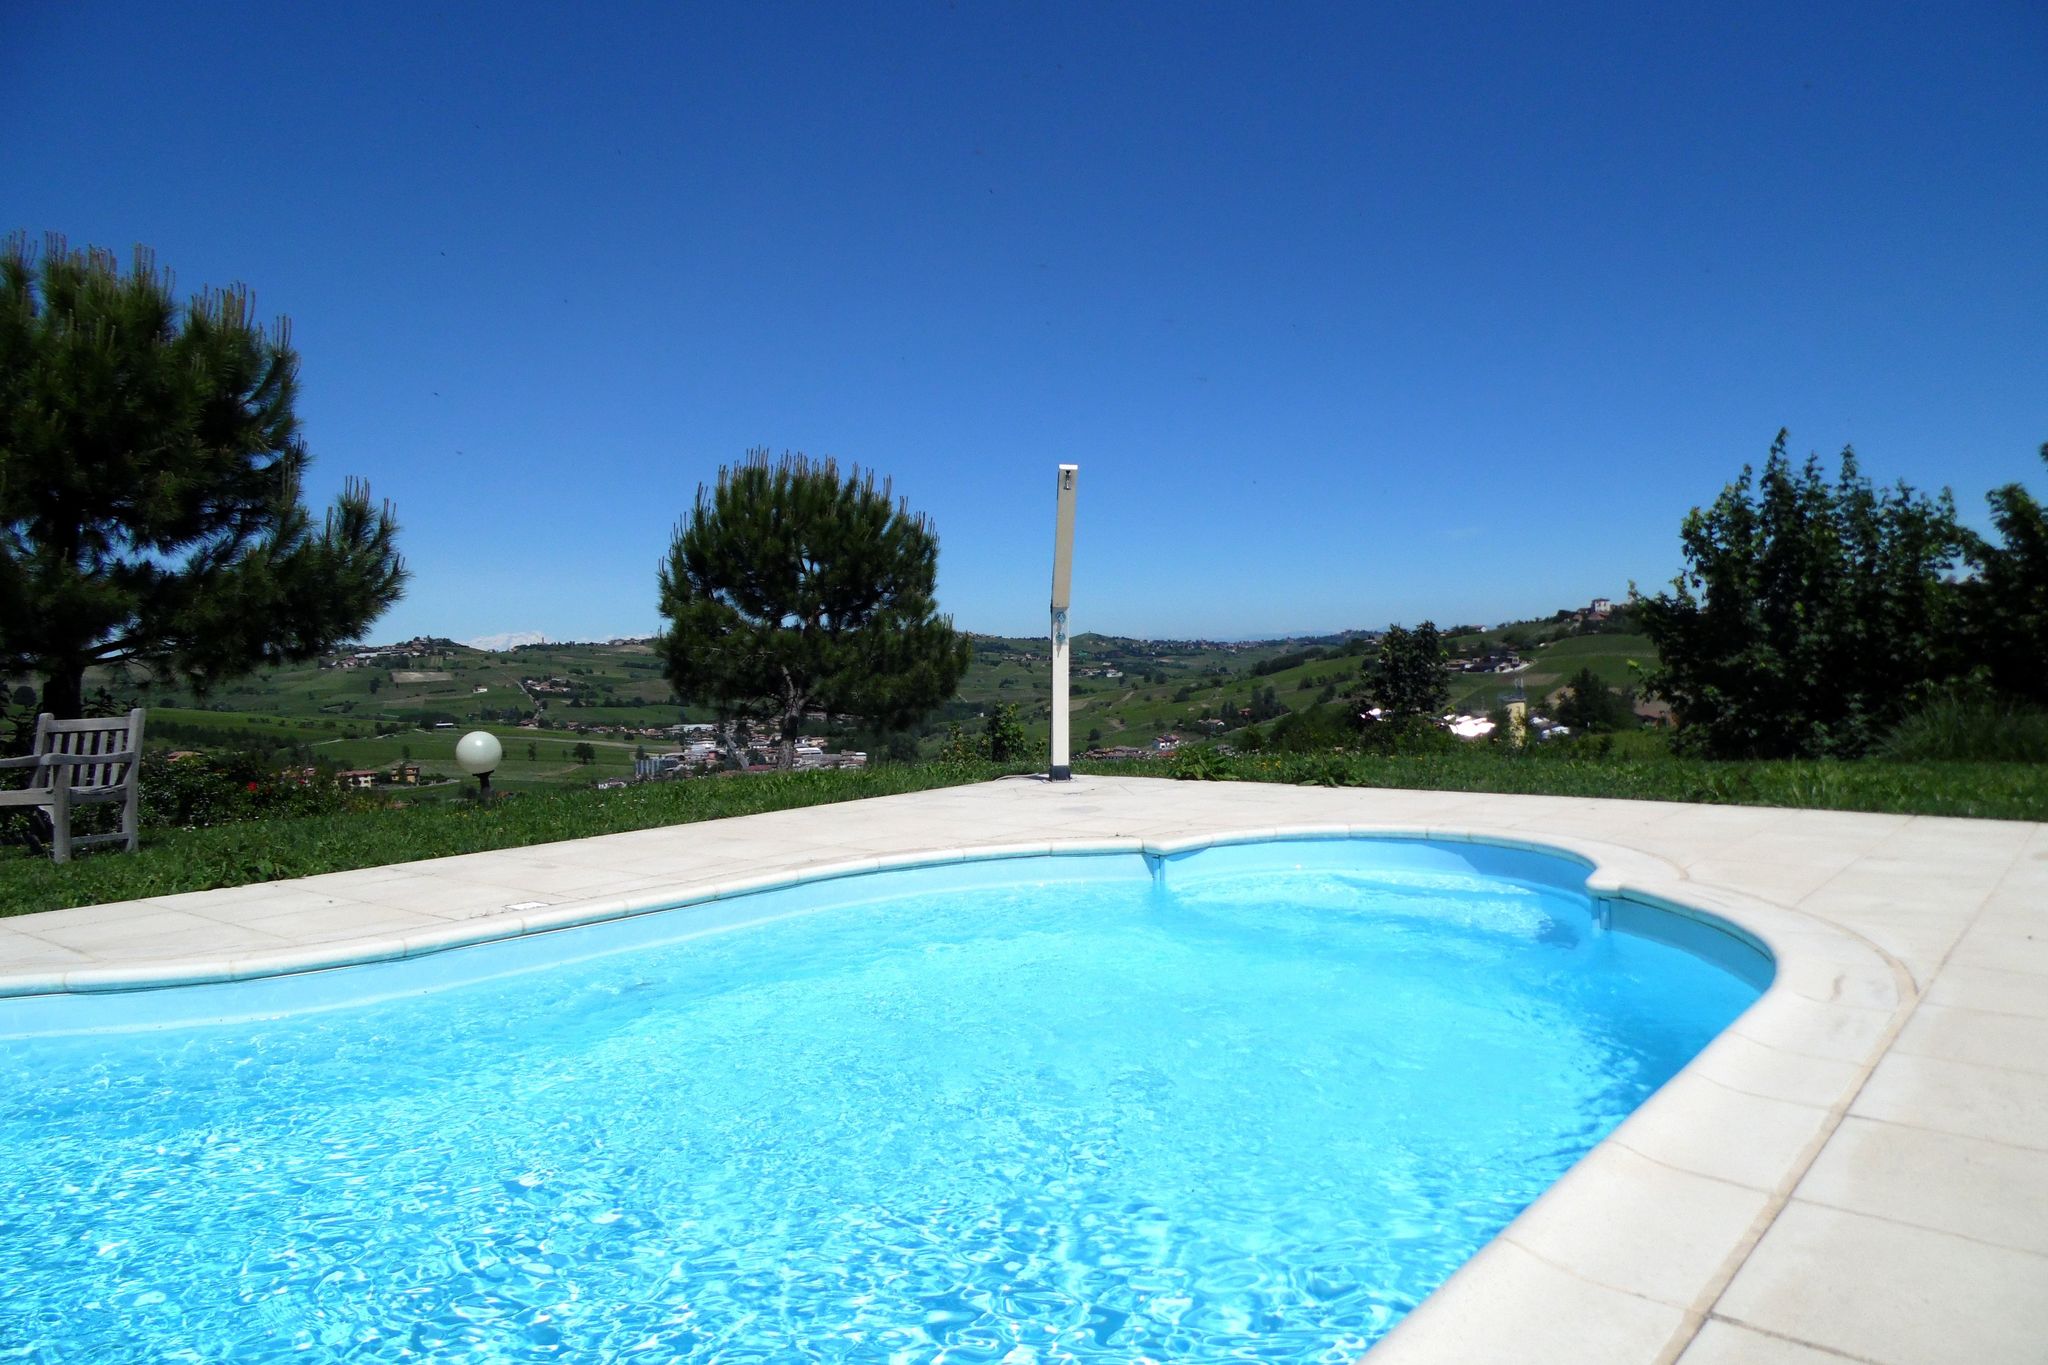 Appartement in wijnresort met gemeenschappelijk zwembad, in rustige heuvelachtig